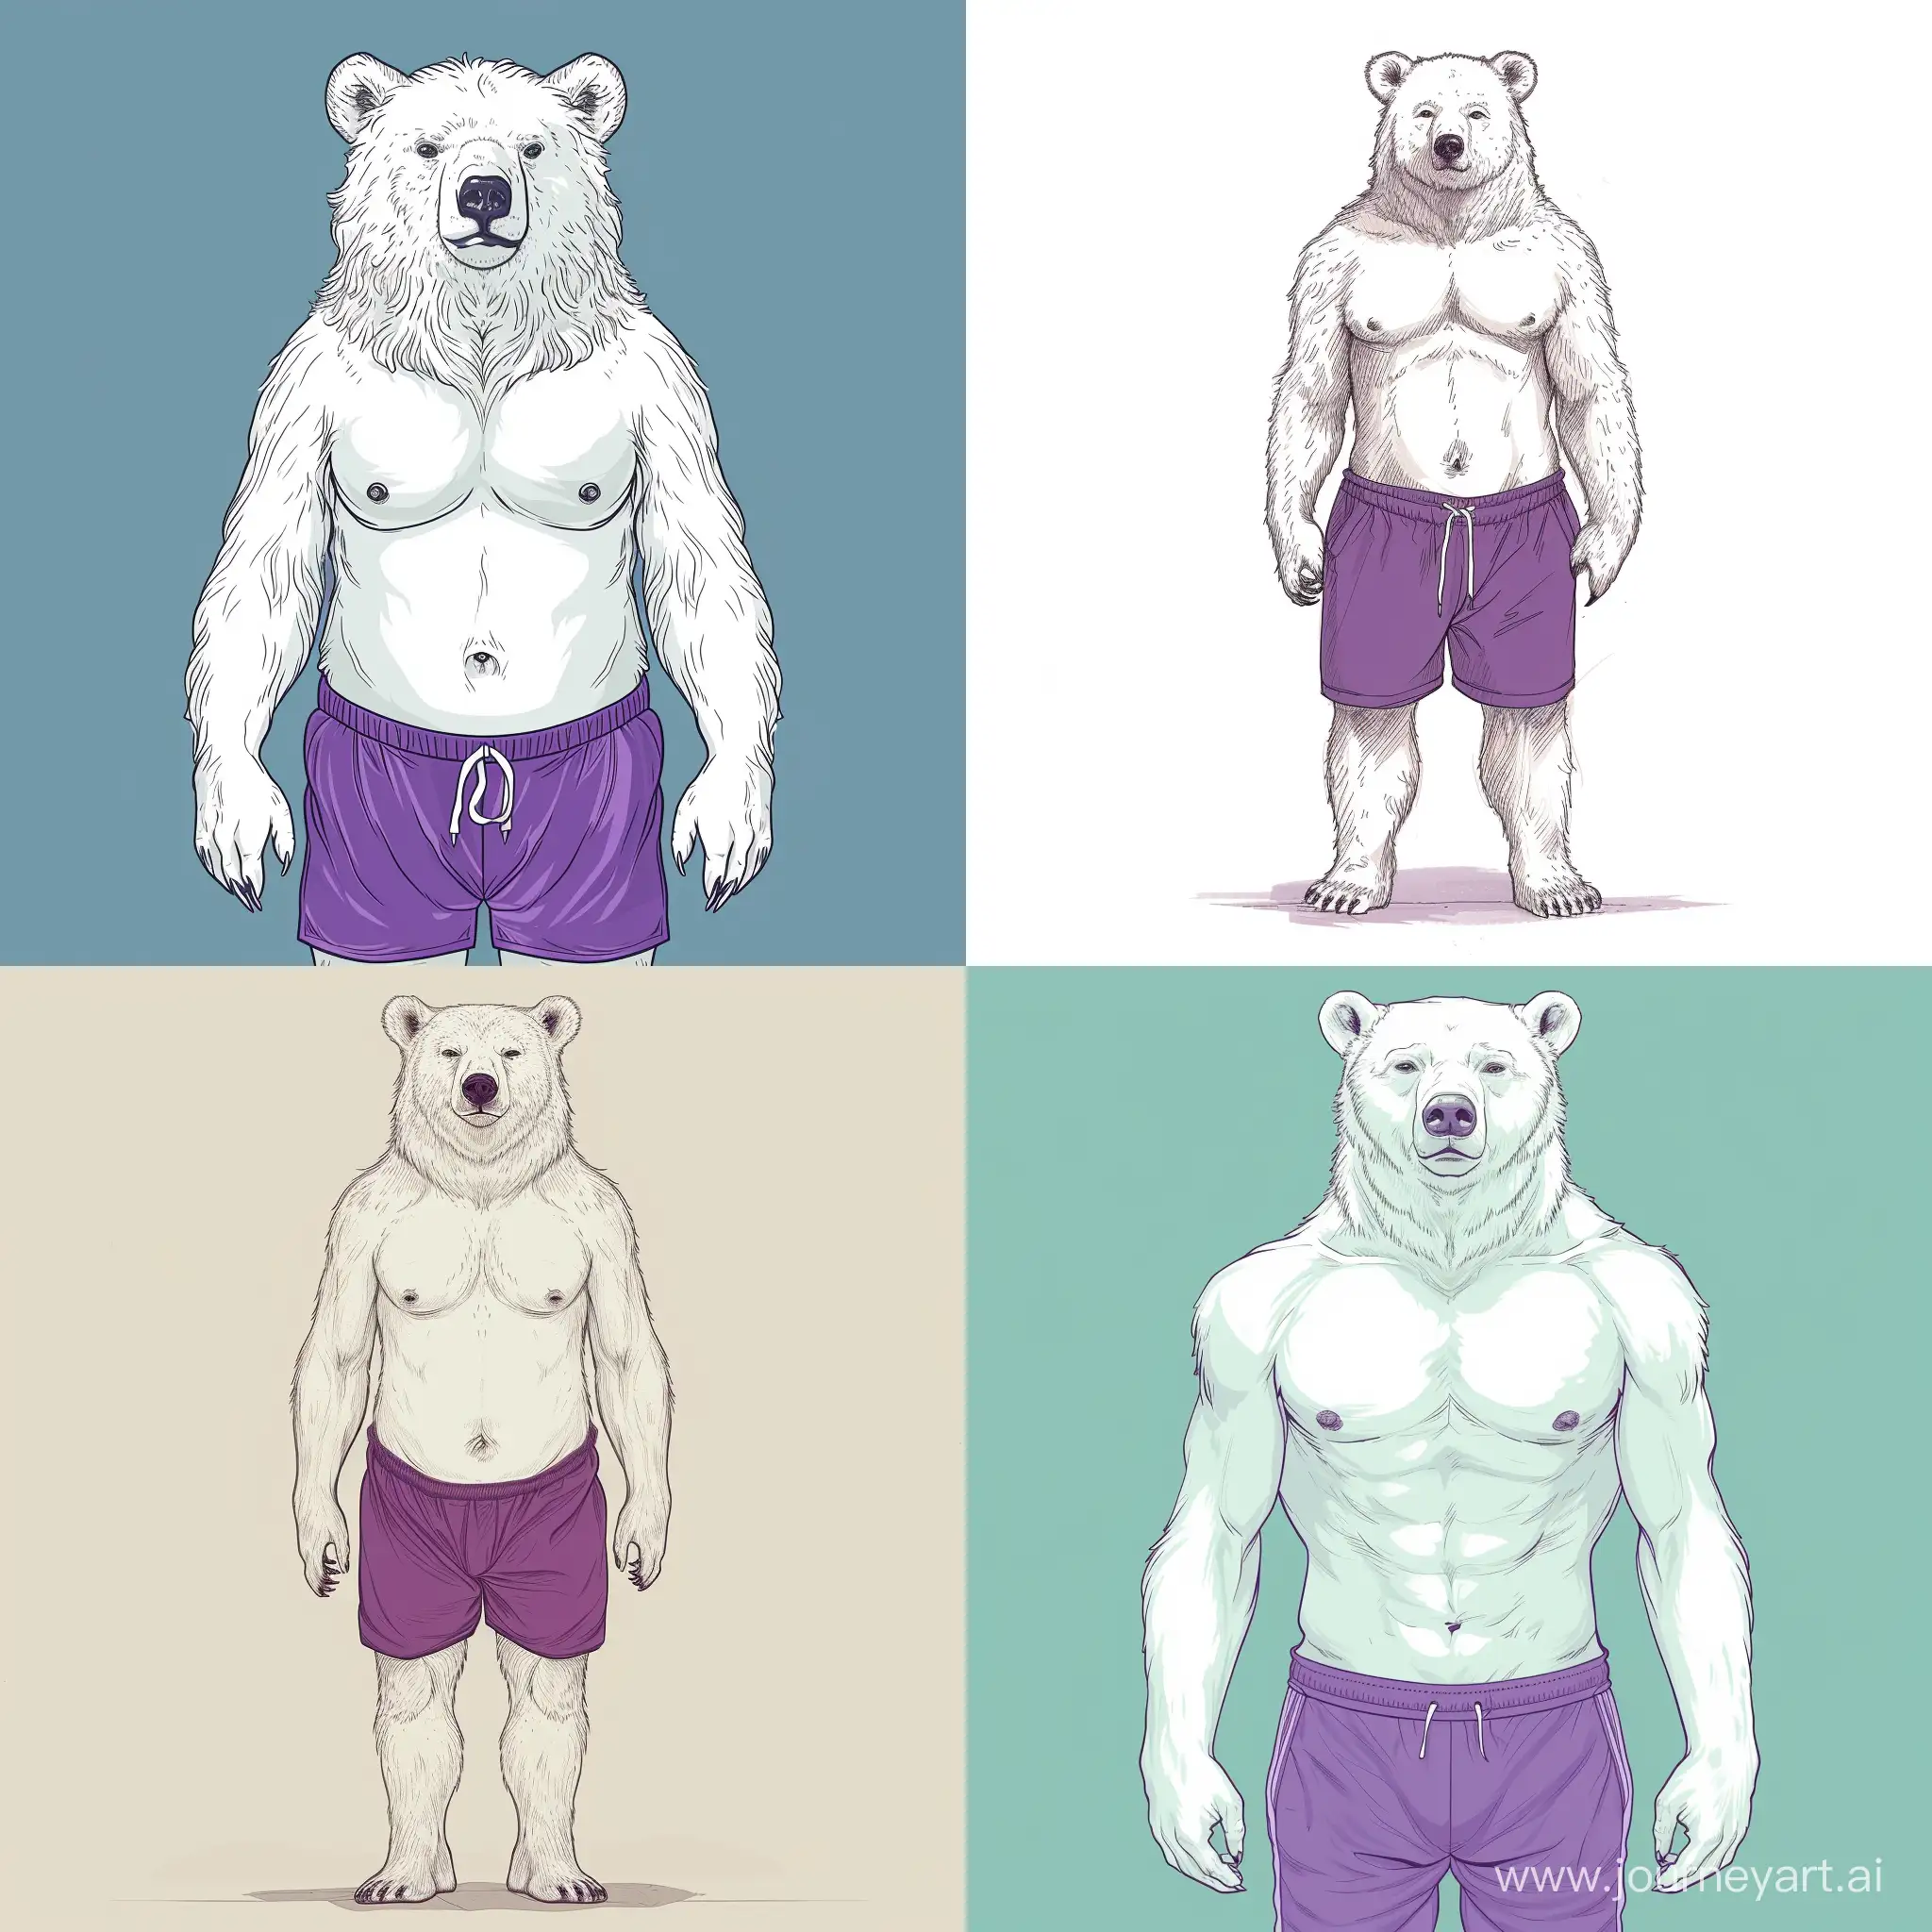 Создайте простого белого мишку без лица(полностью белый медведь без видимого лица) в модных мужских фиолетовых плавках. Медведь должен быть повернут анфасом. Рисунок должен быть простым, на картинке мало деталей- только плавки и сам медведь, для дизайна на одежду